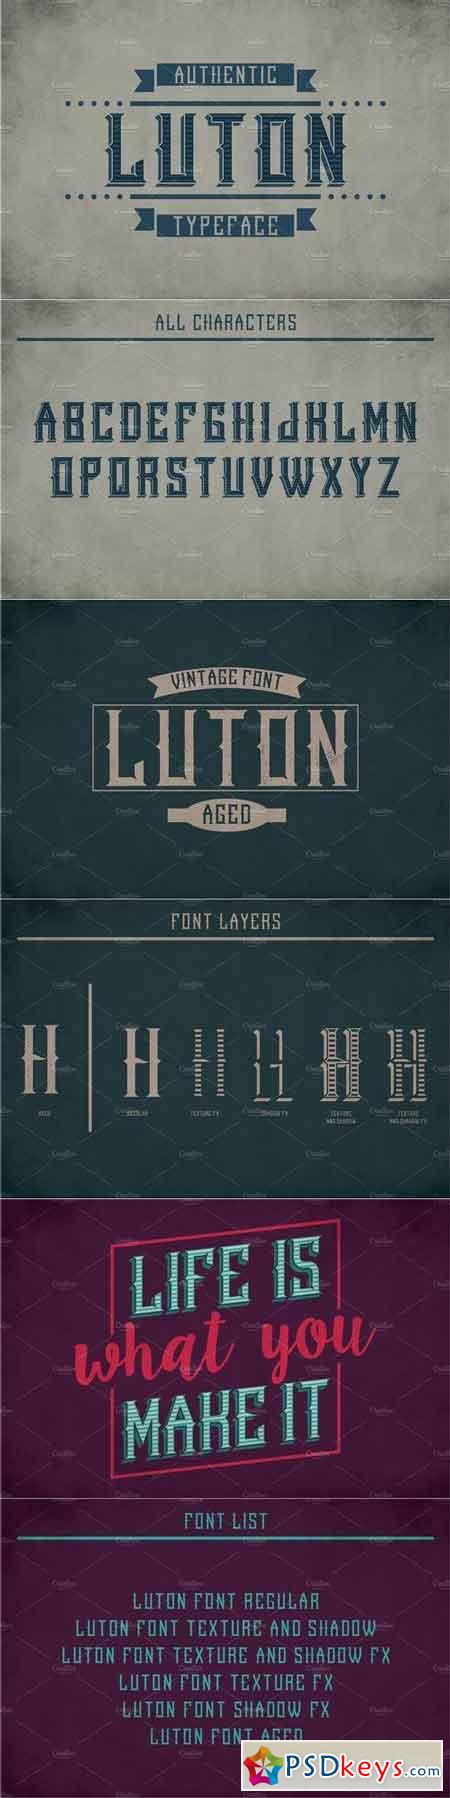 Luton Vintage Label Typeface 1812005